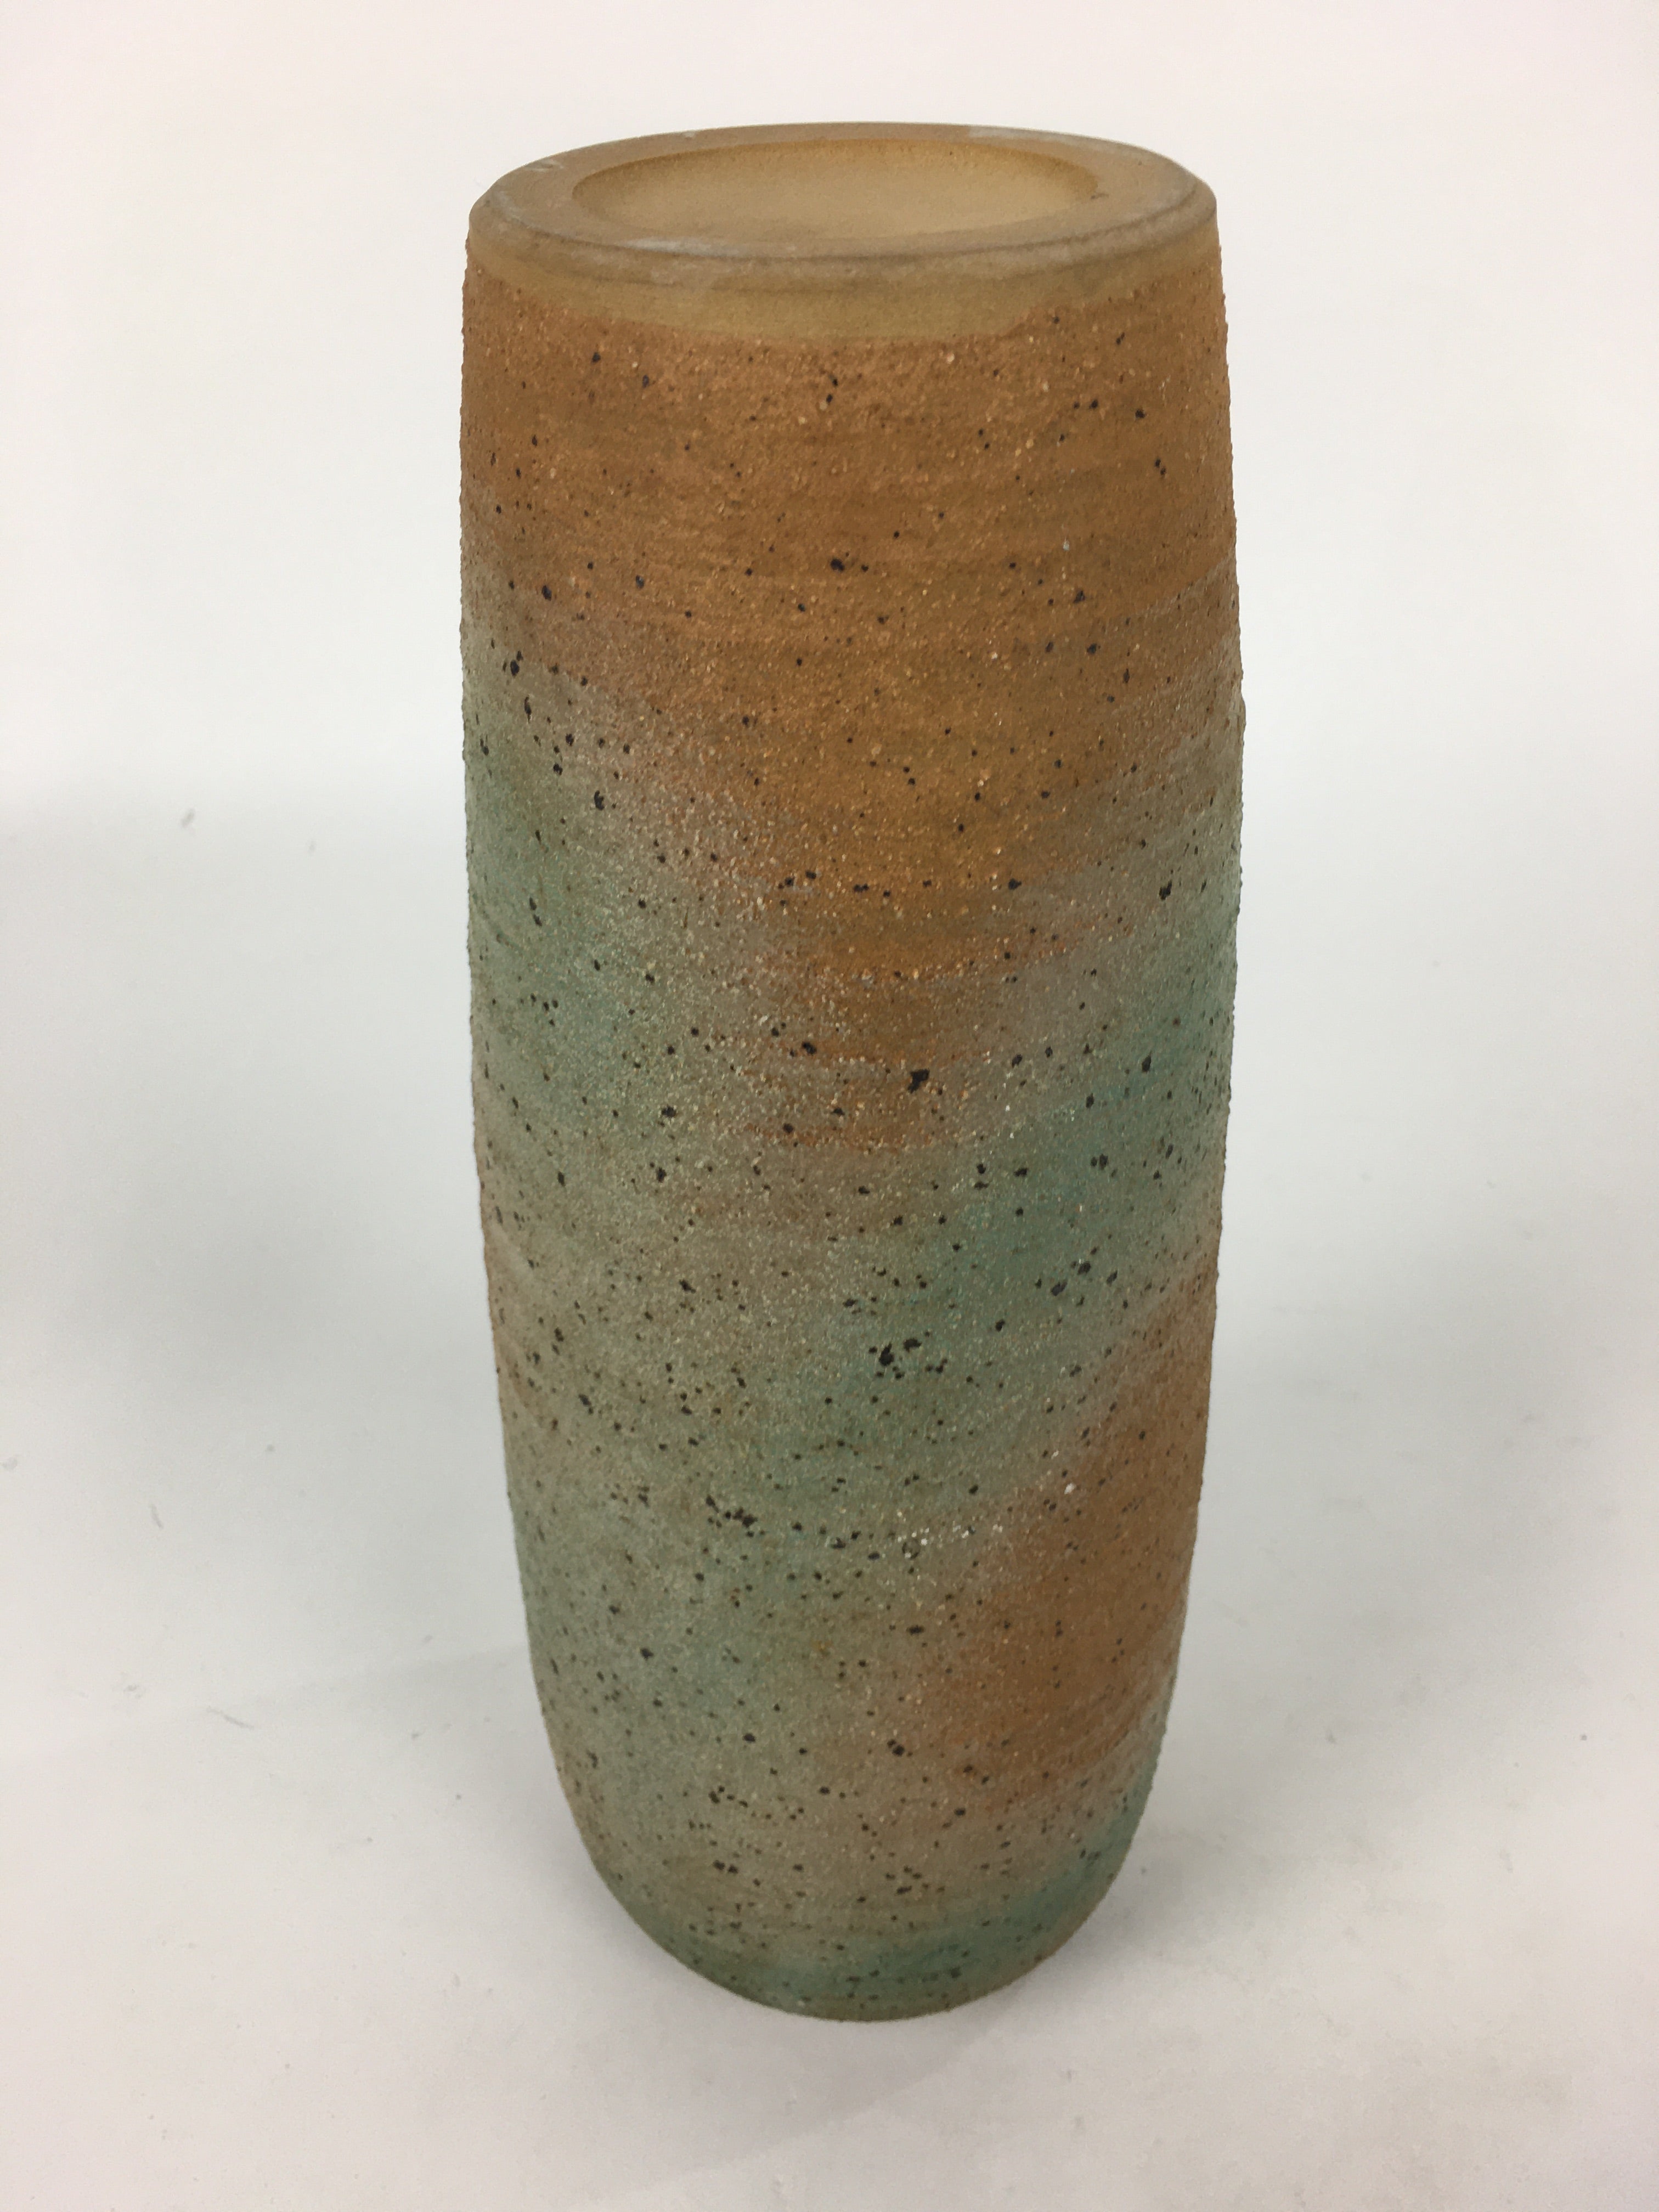 Japanese Ceramic Flower Vase Vtg Kabin Ikebana Arrangement Cylinder FV969